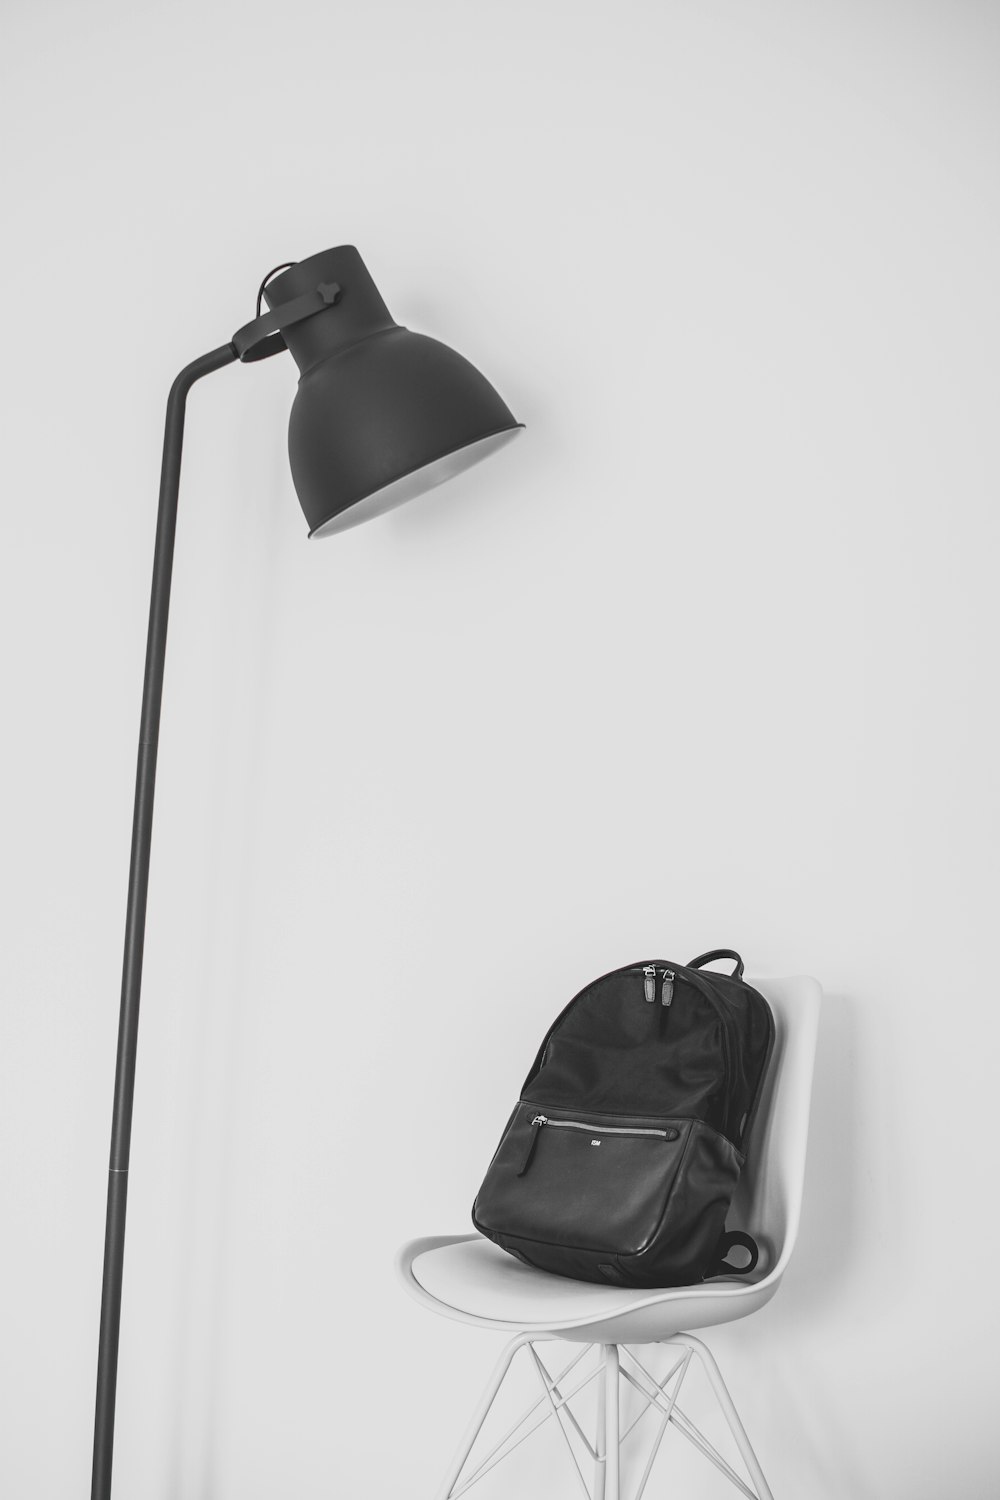 lâmpada preta ao lado da mochila em cima da cadeira